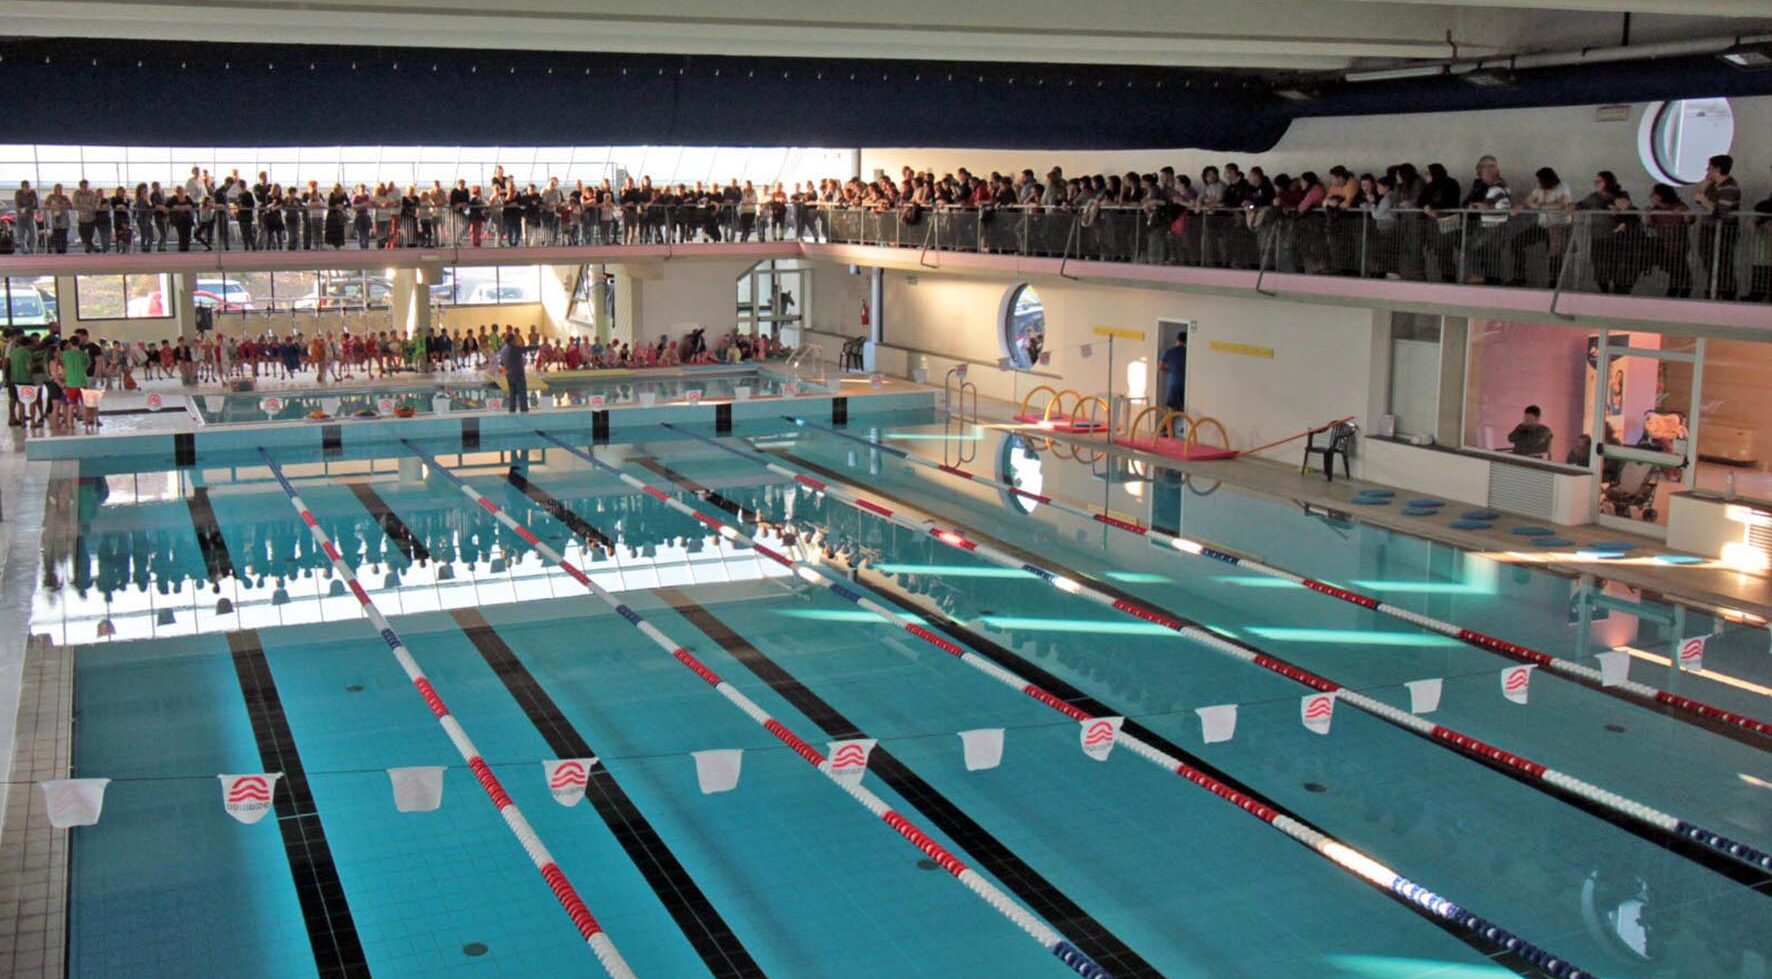 La piscina comunale di Foiano della Chiana apre la nuova stagione sportiva